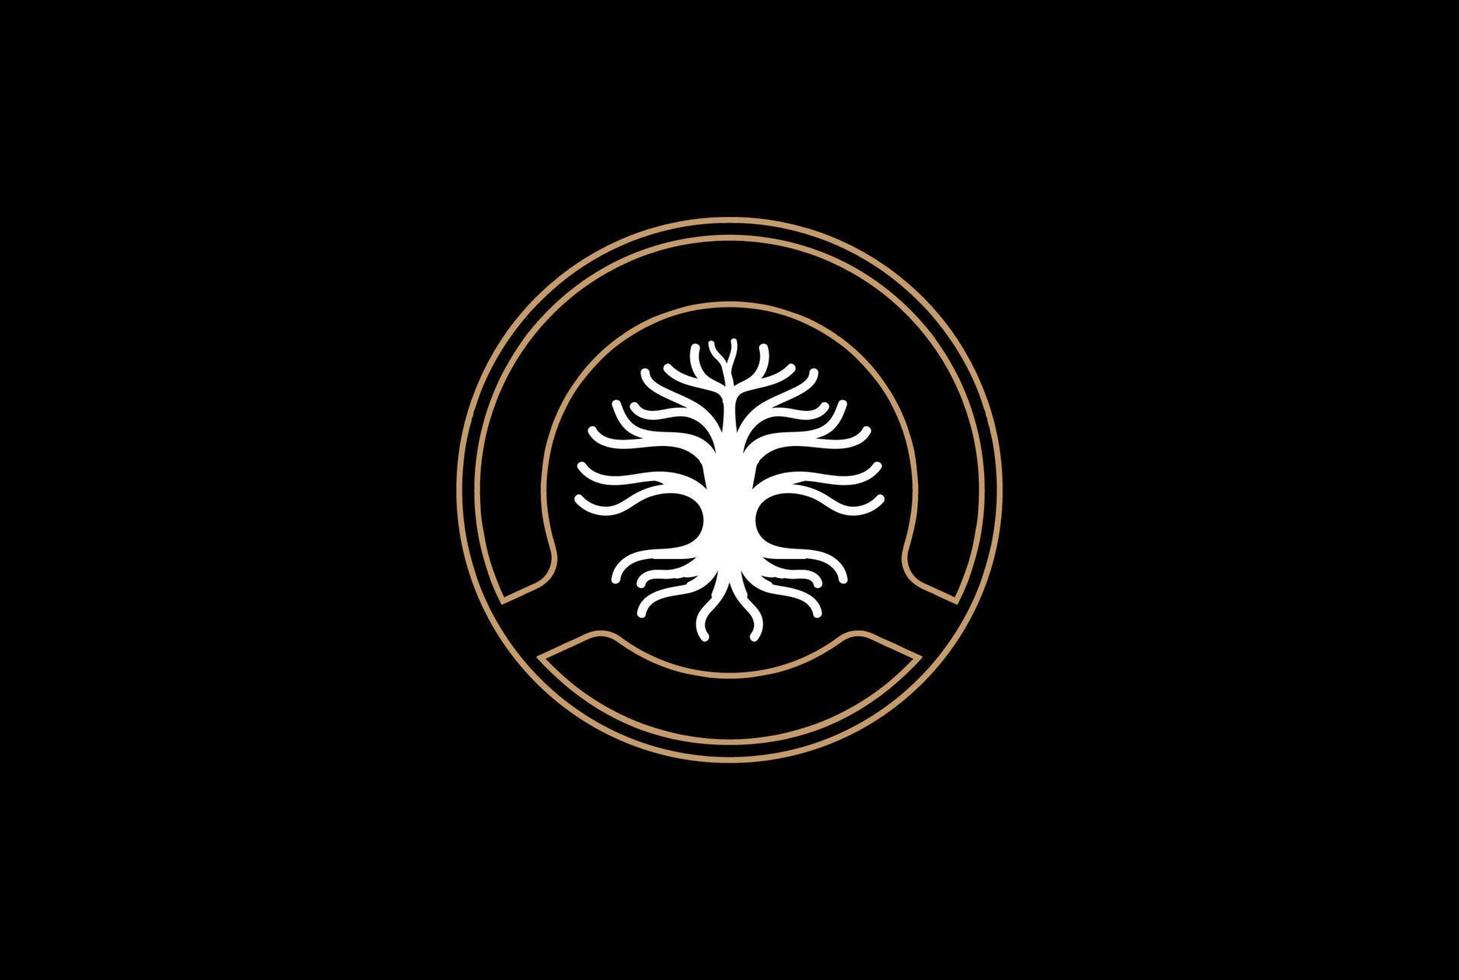 cercle chêne banian érable arbre généalogique de la vie timbre sceau emblème logo design vecteur